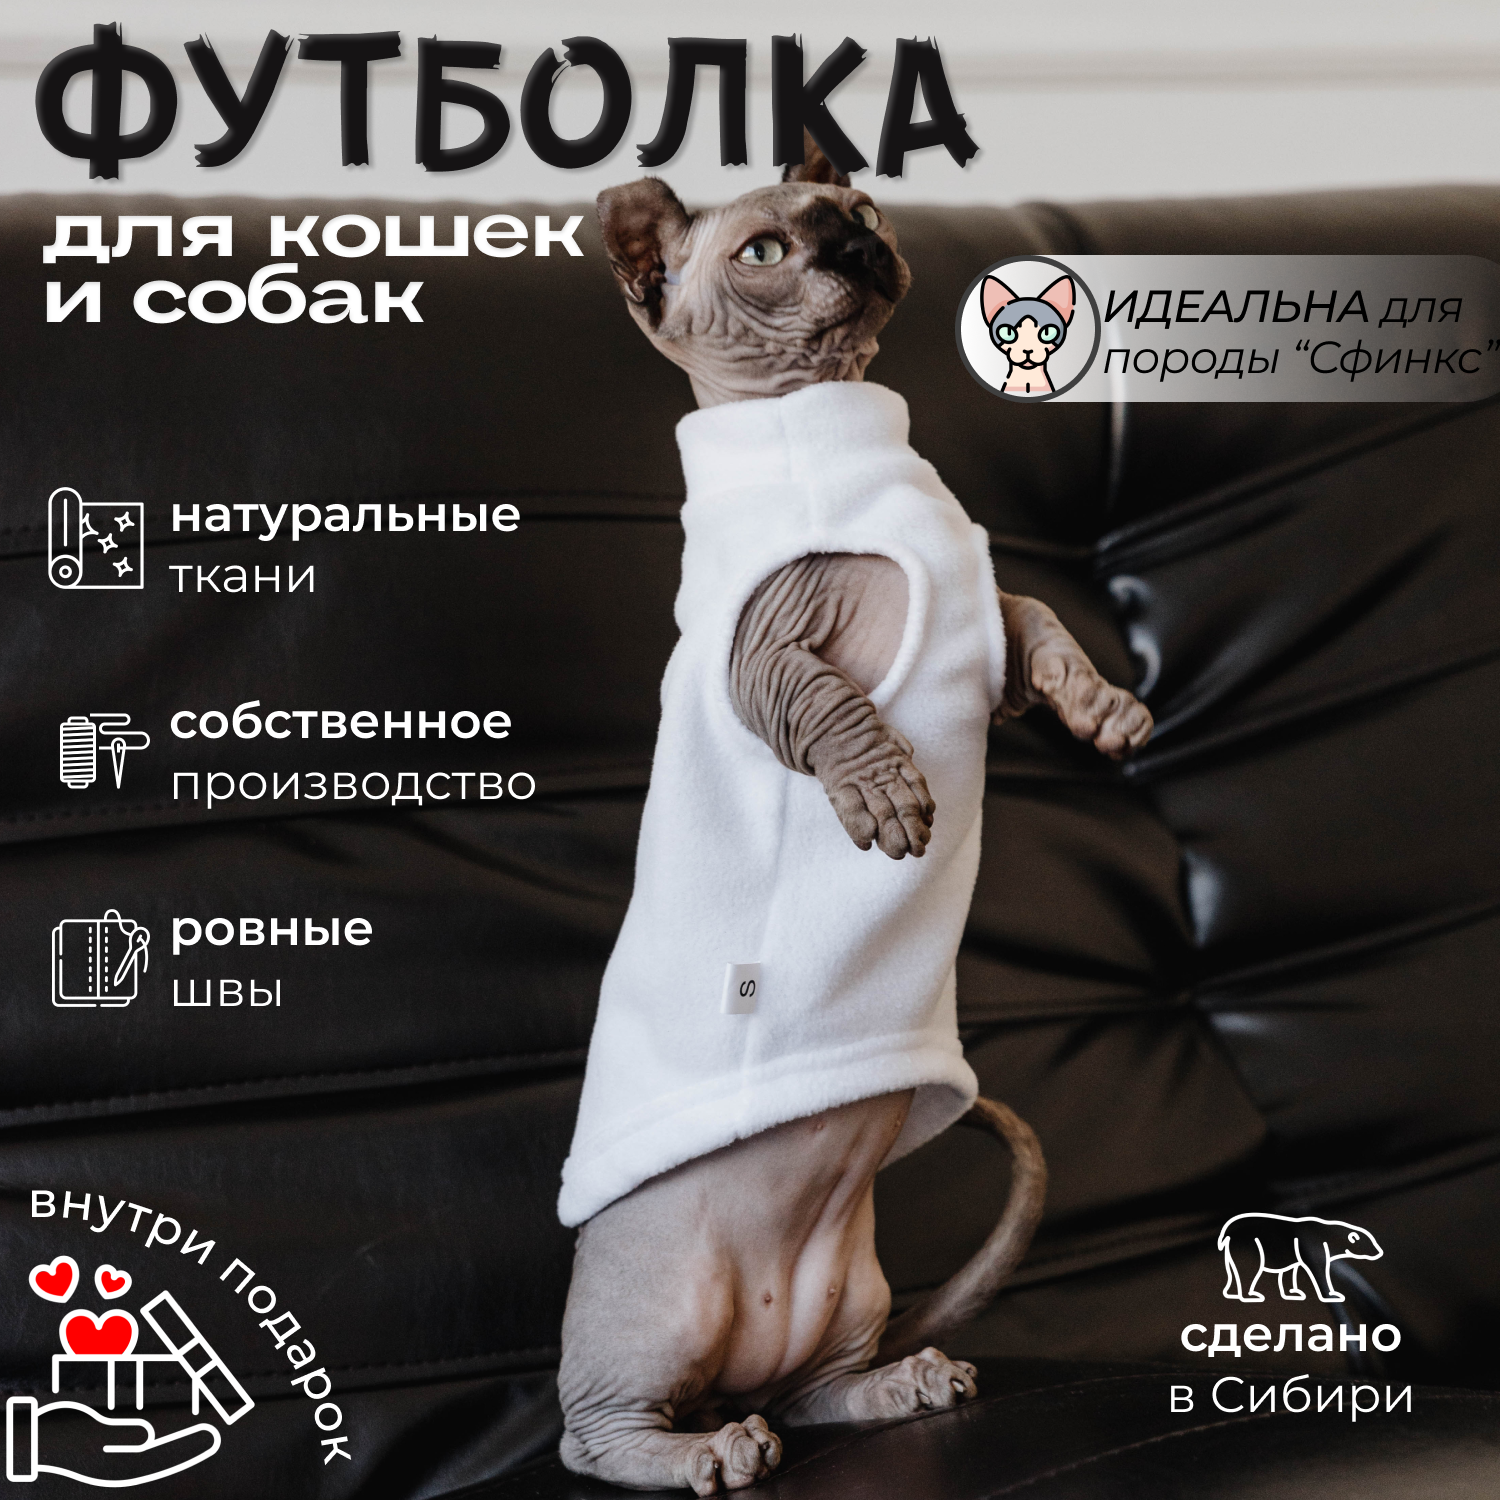 Одежда для кошек жилет майка для котят и кошек от бренда "Тиссо" размер XS